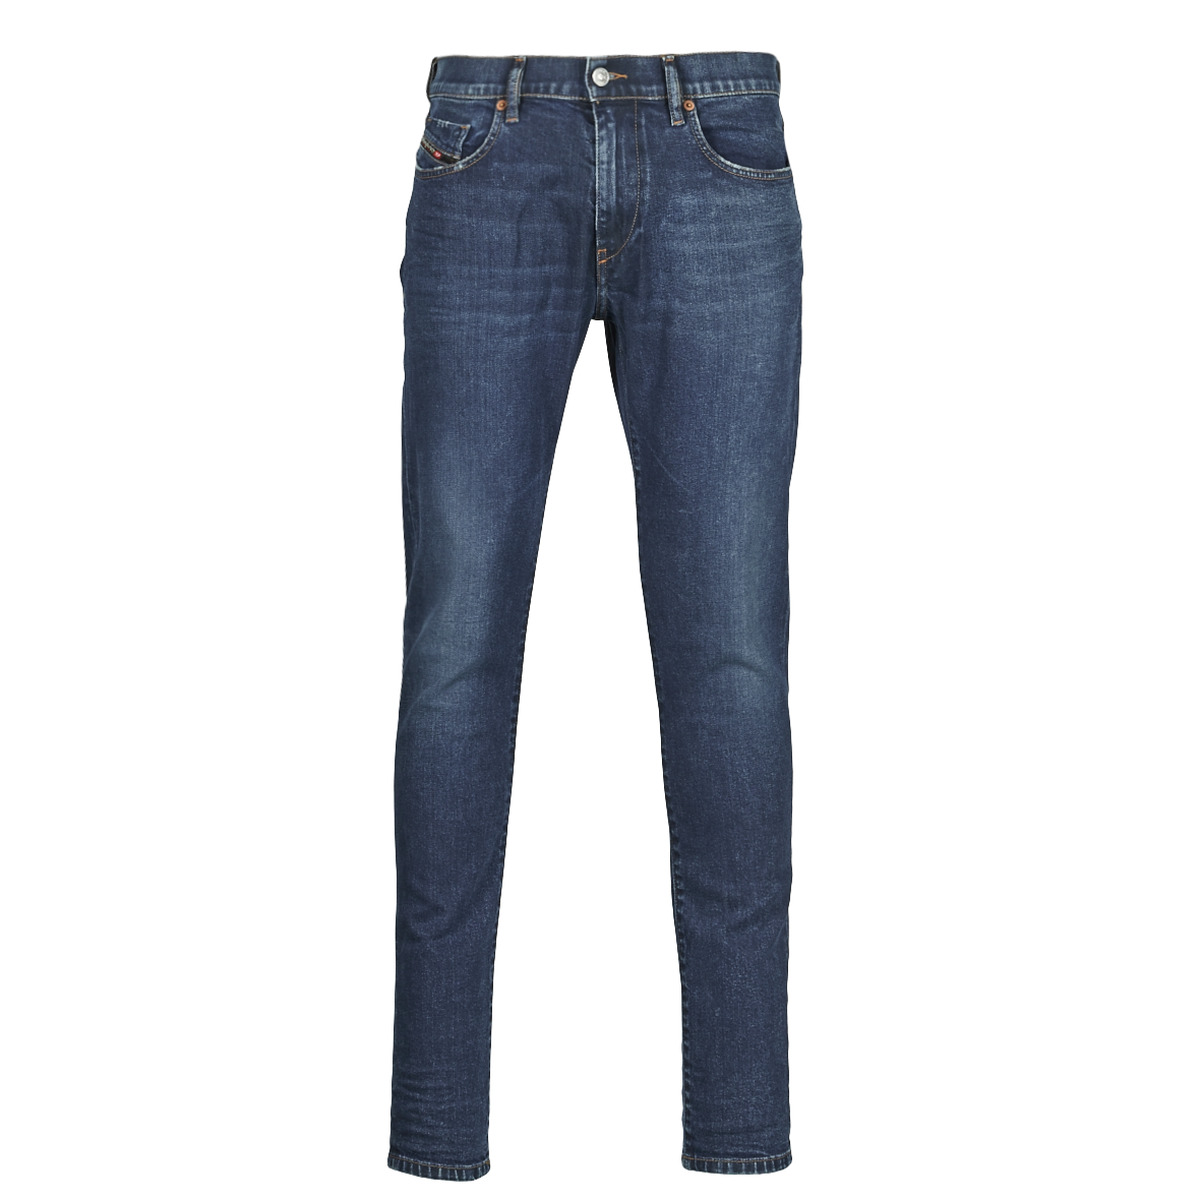 Vêtements Homme Jeans legging slim Diesel D-STRUKT Bleu Foncé